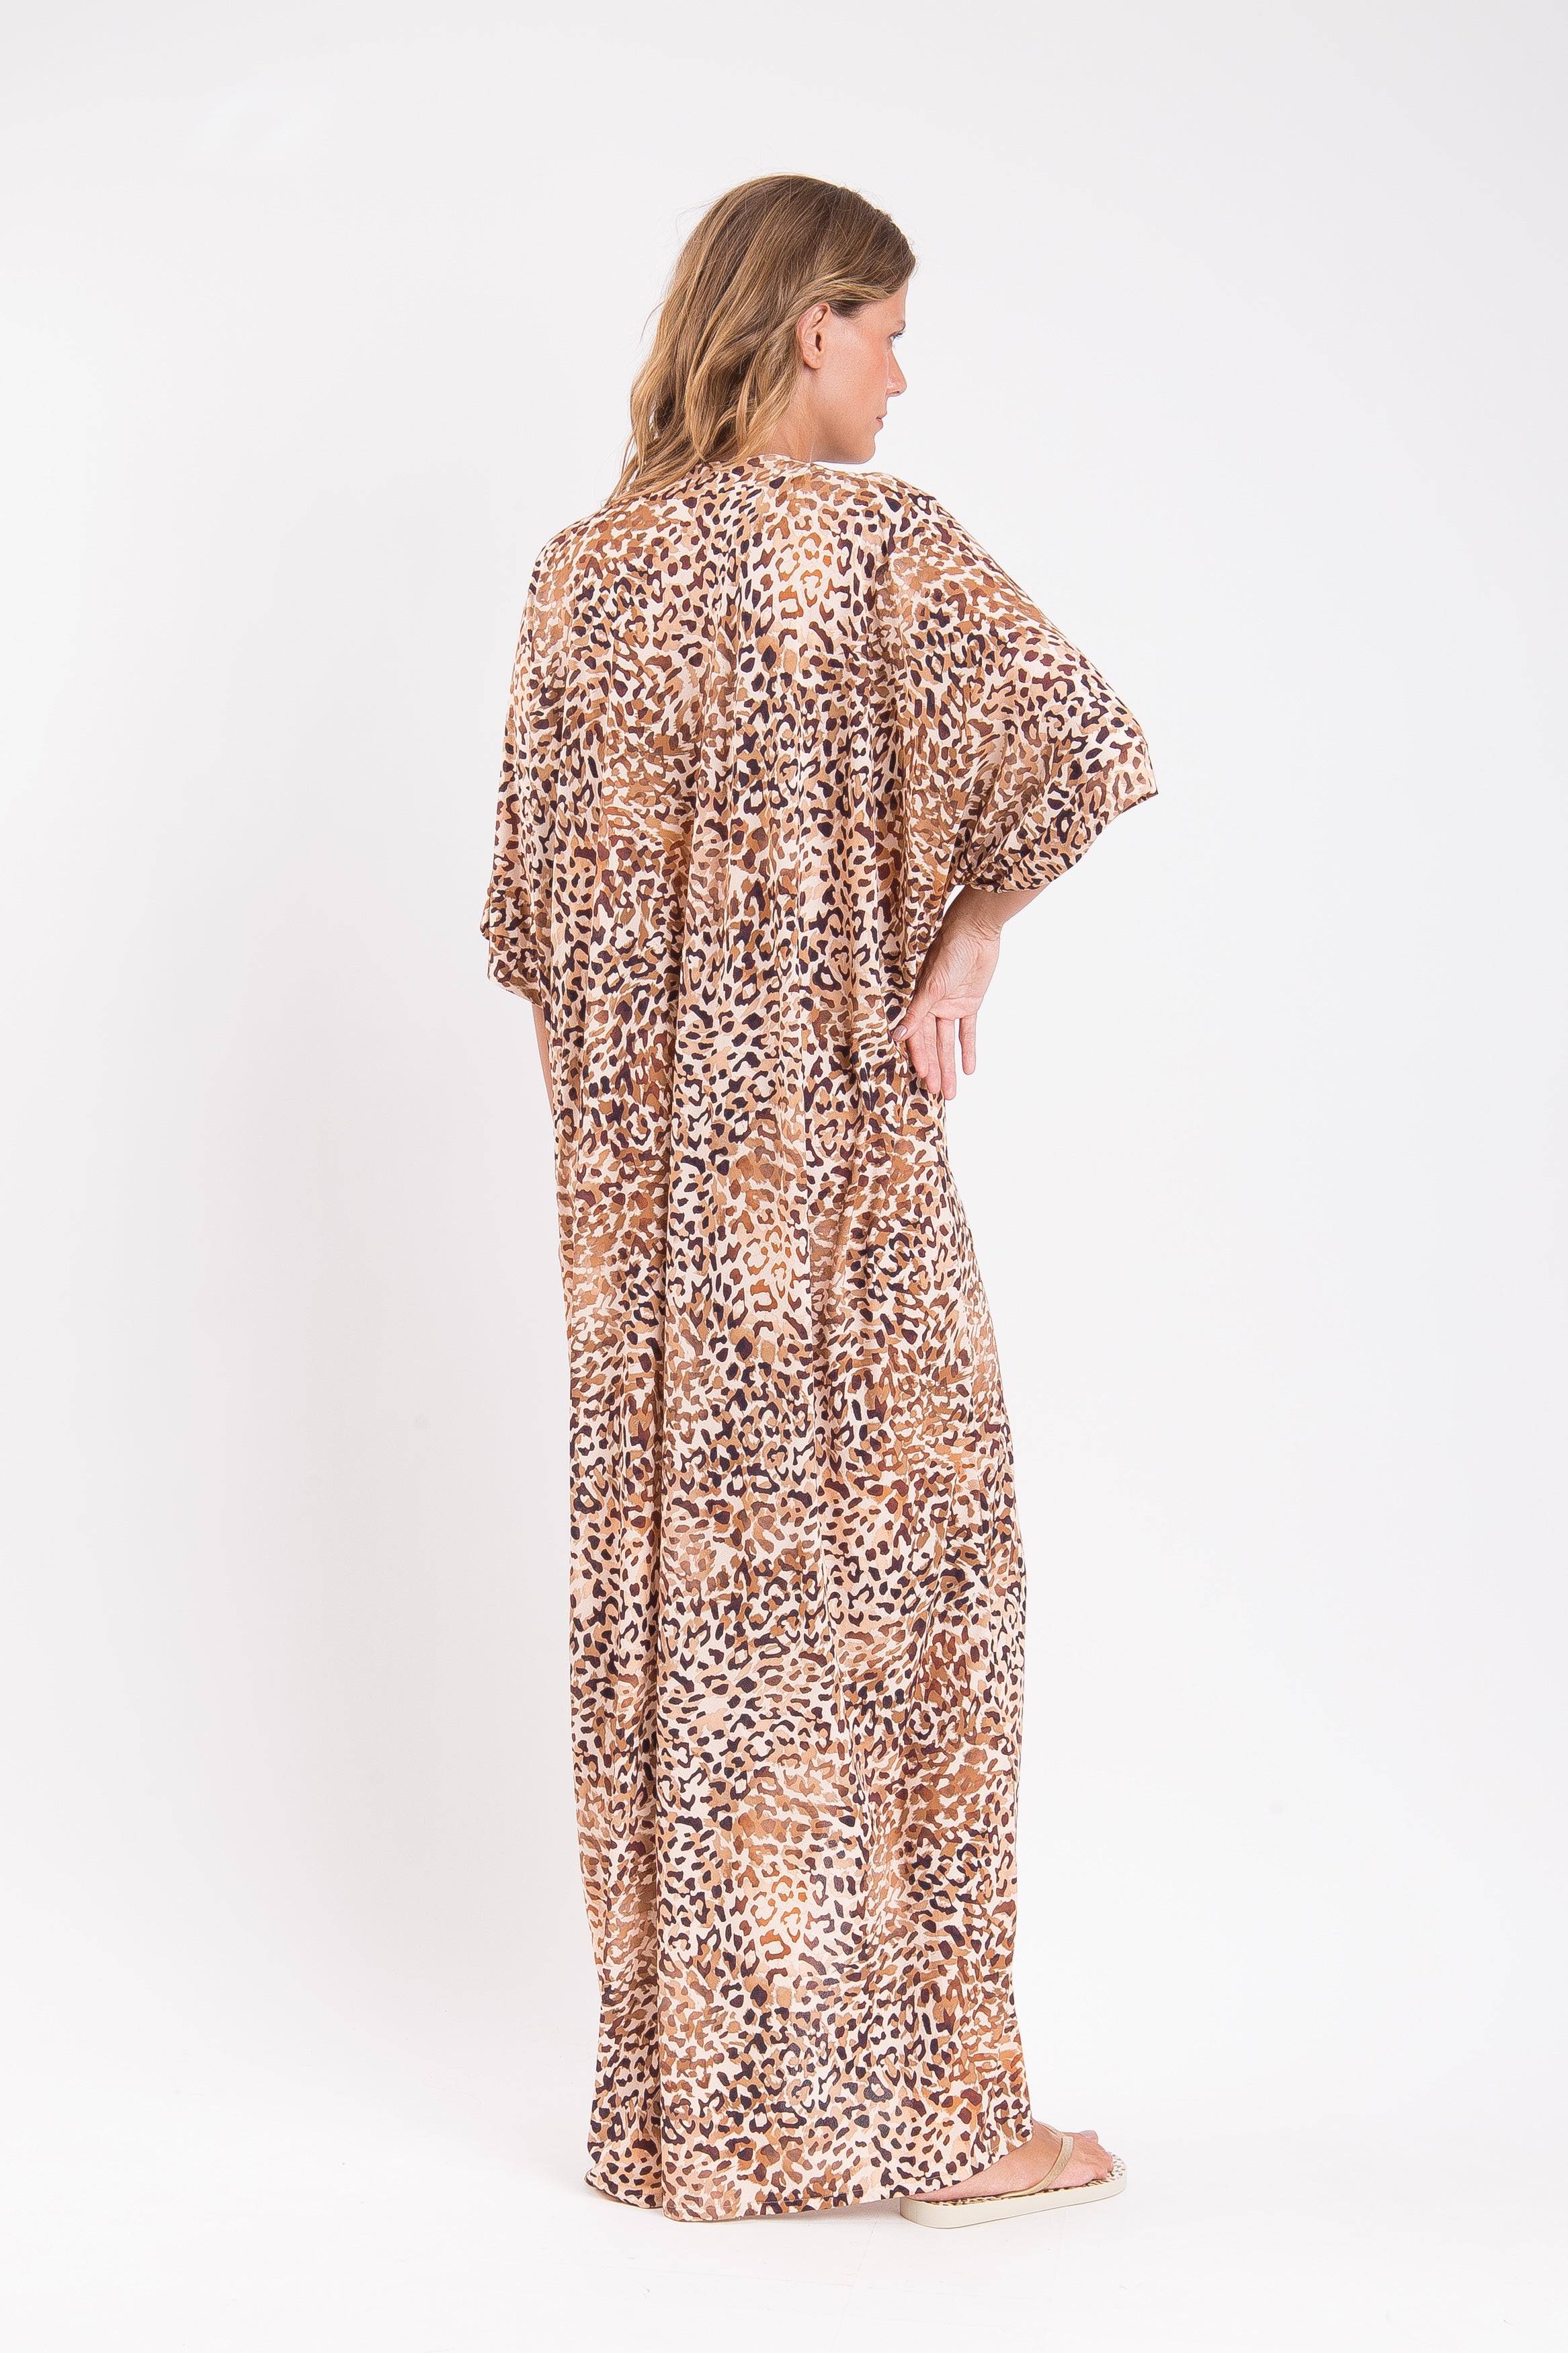 Leopard Long Dress